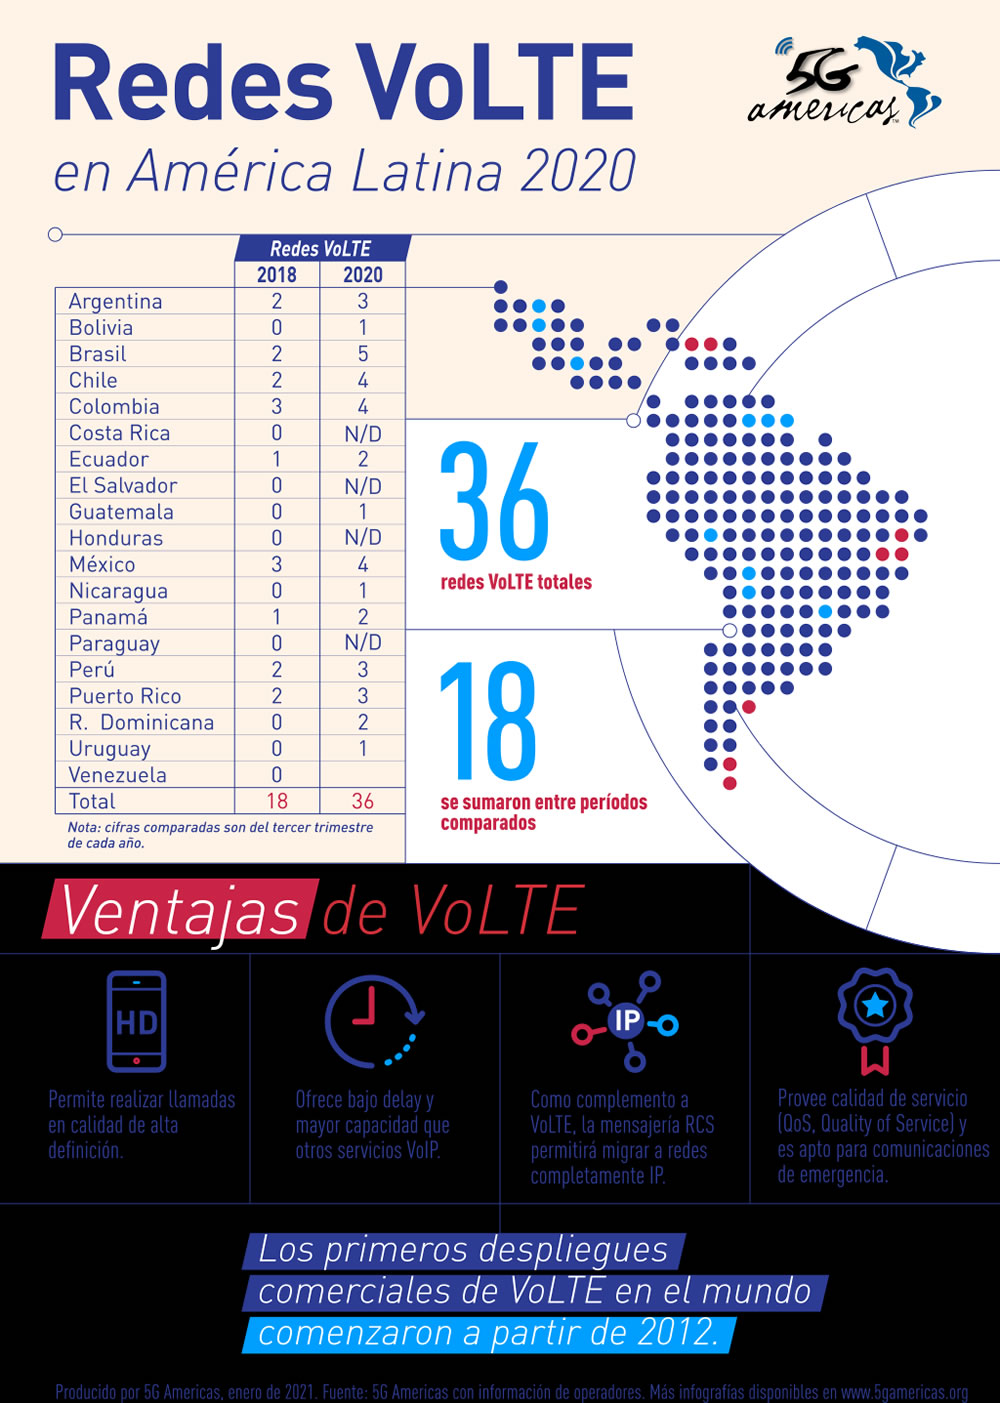 50% de las redes LTE en Latinoamérica cuentan con VoLTE 